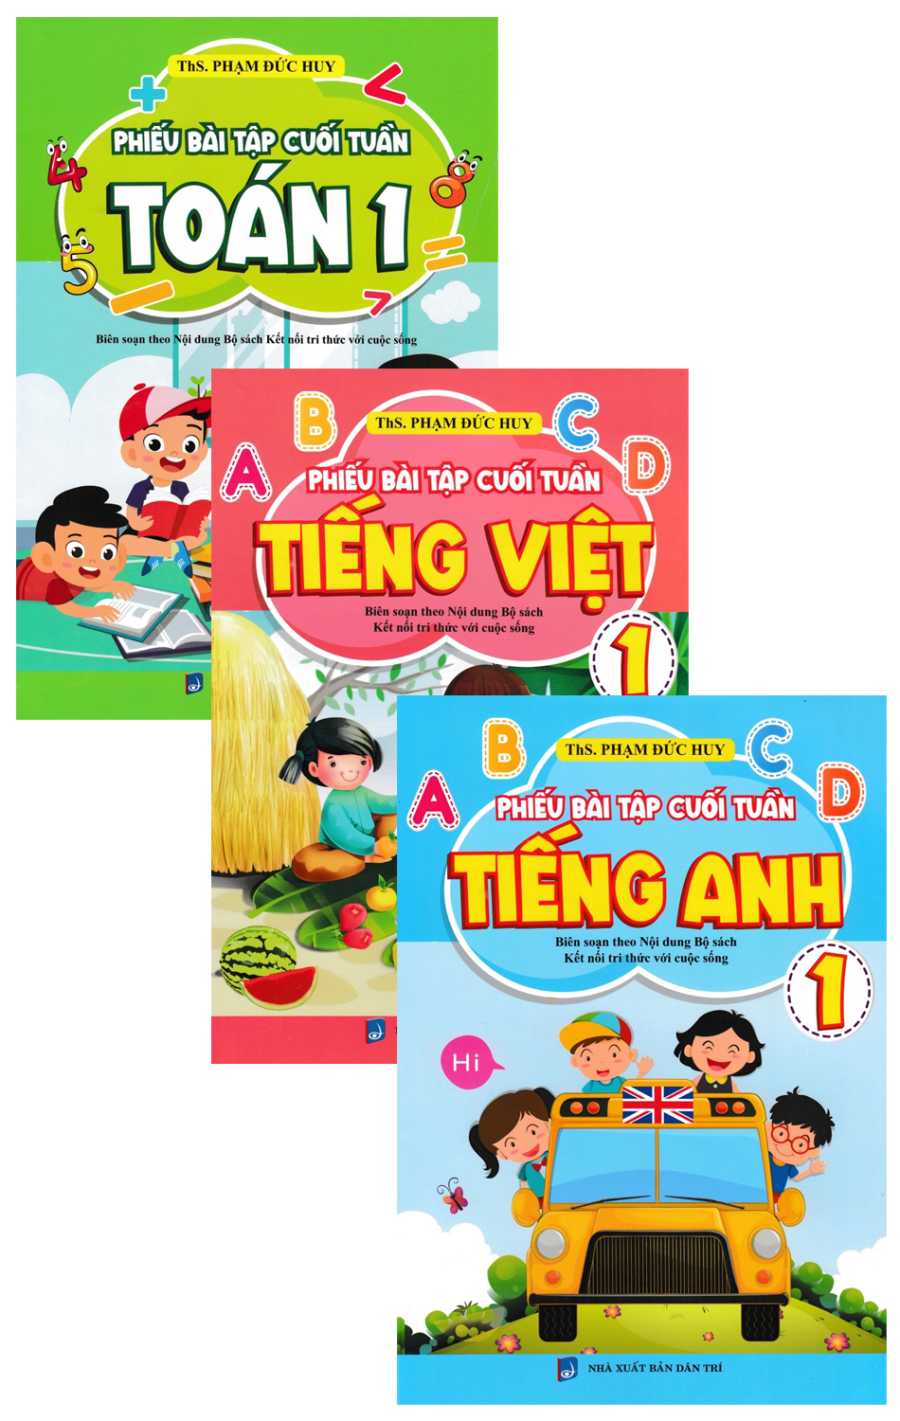 Phiếu Bài Tập Cuối Tuần Toán 1: Toán + Tiếng Việt + Tiếng Anh